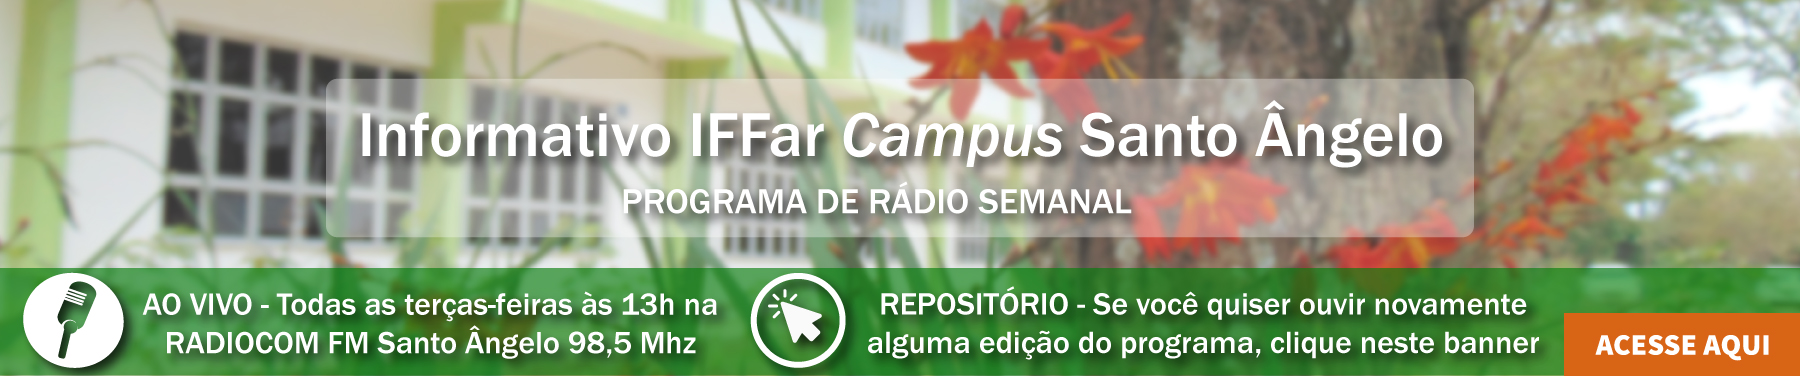 Informativo do IFFar Campus Santo Ângelo (no rádio)